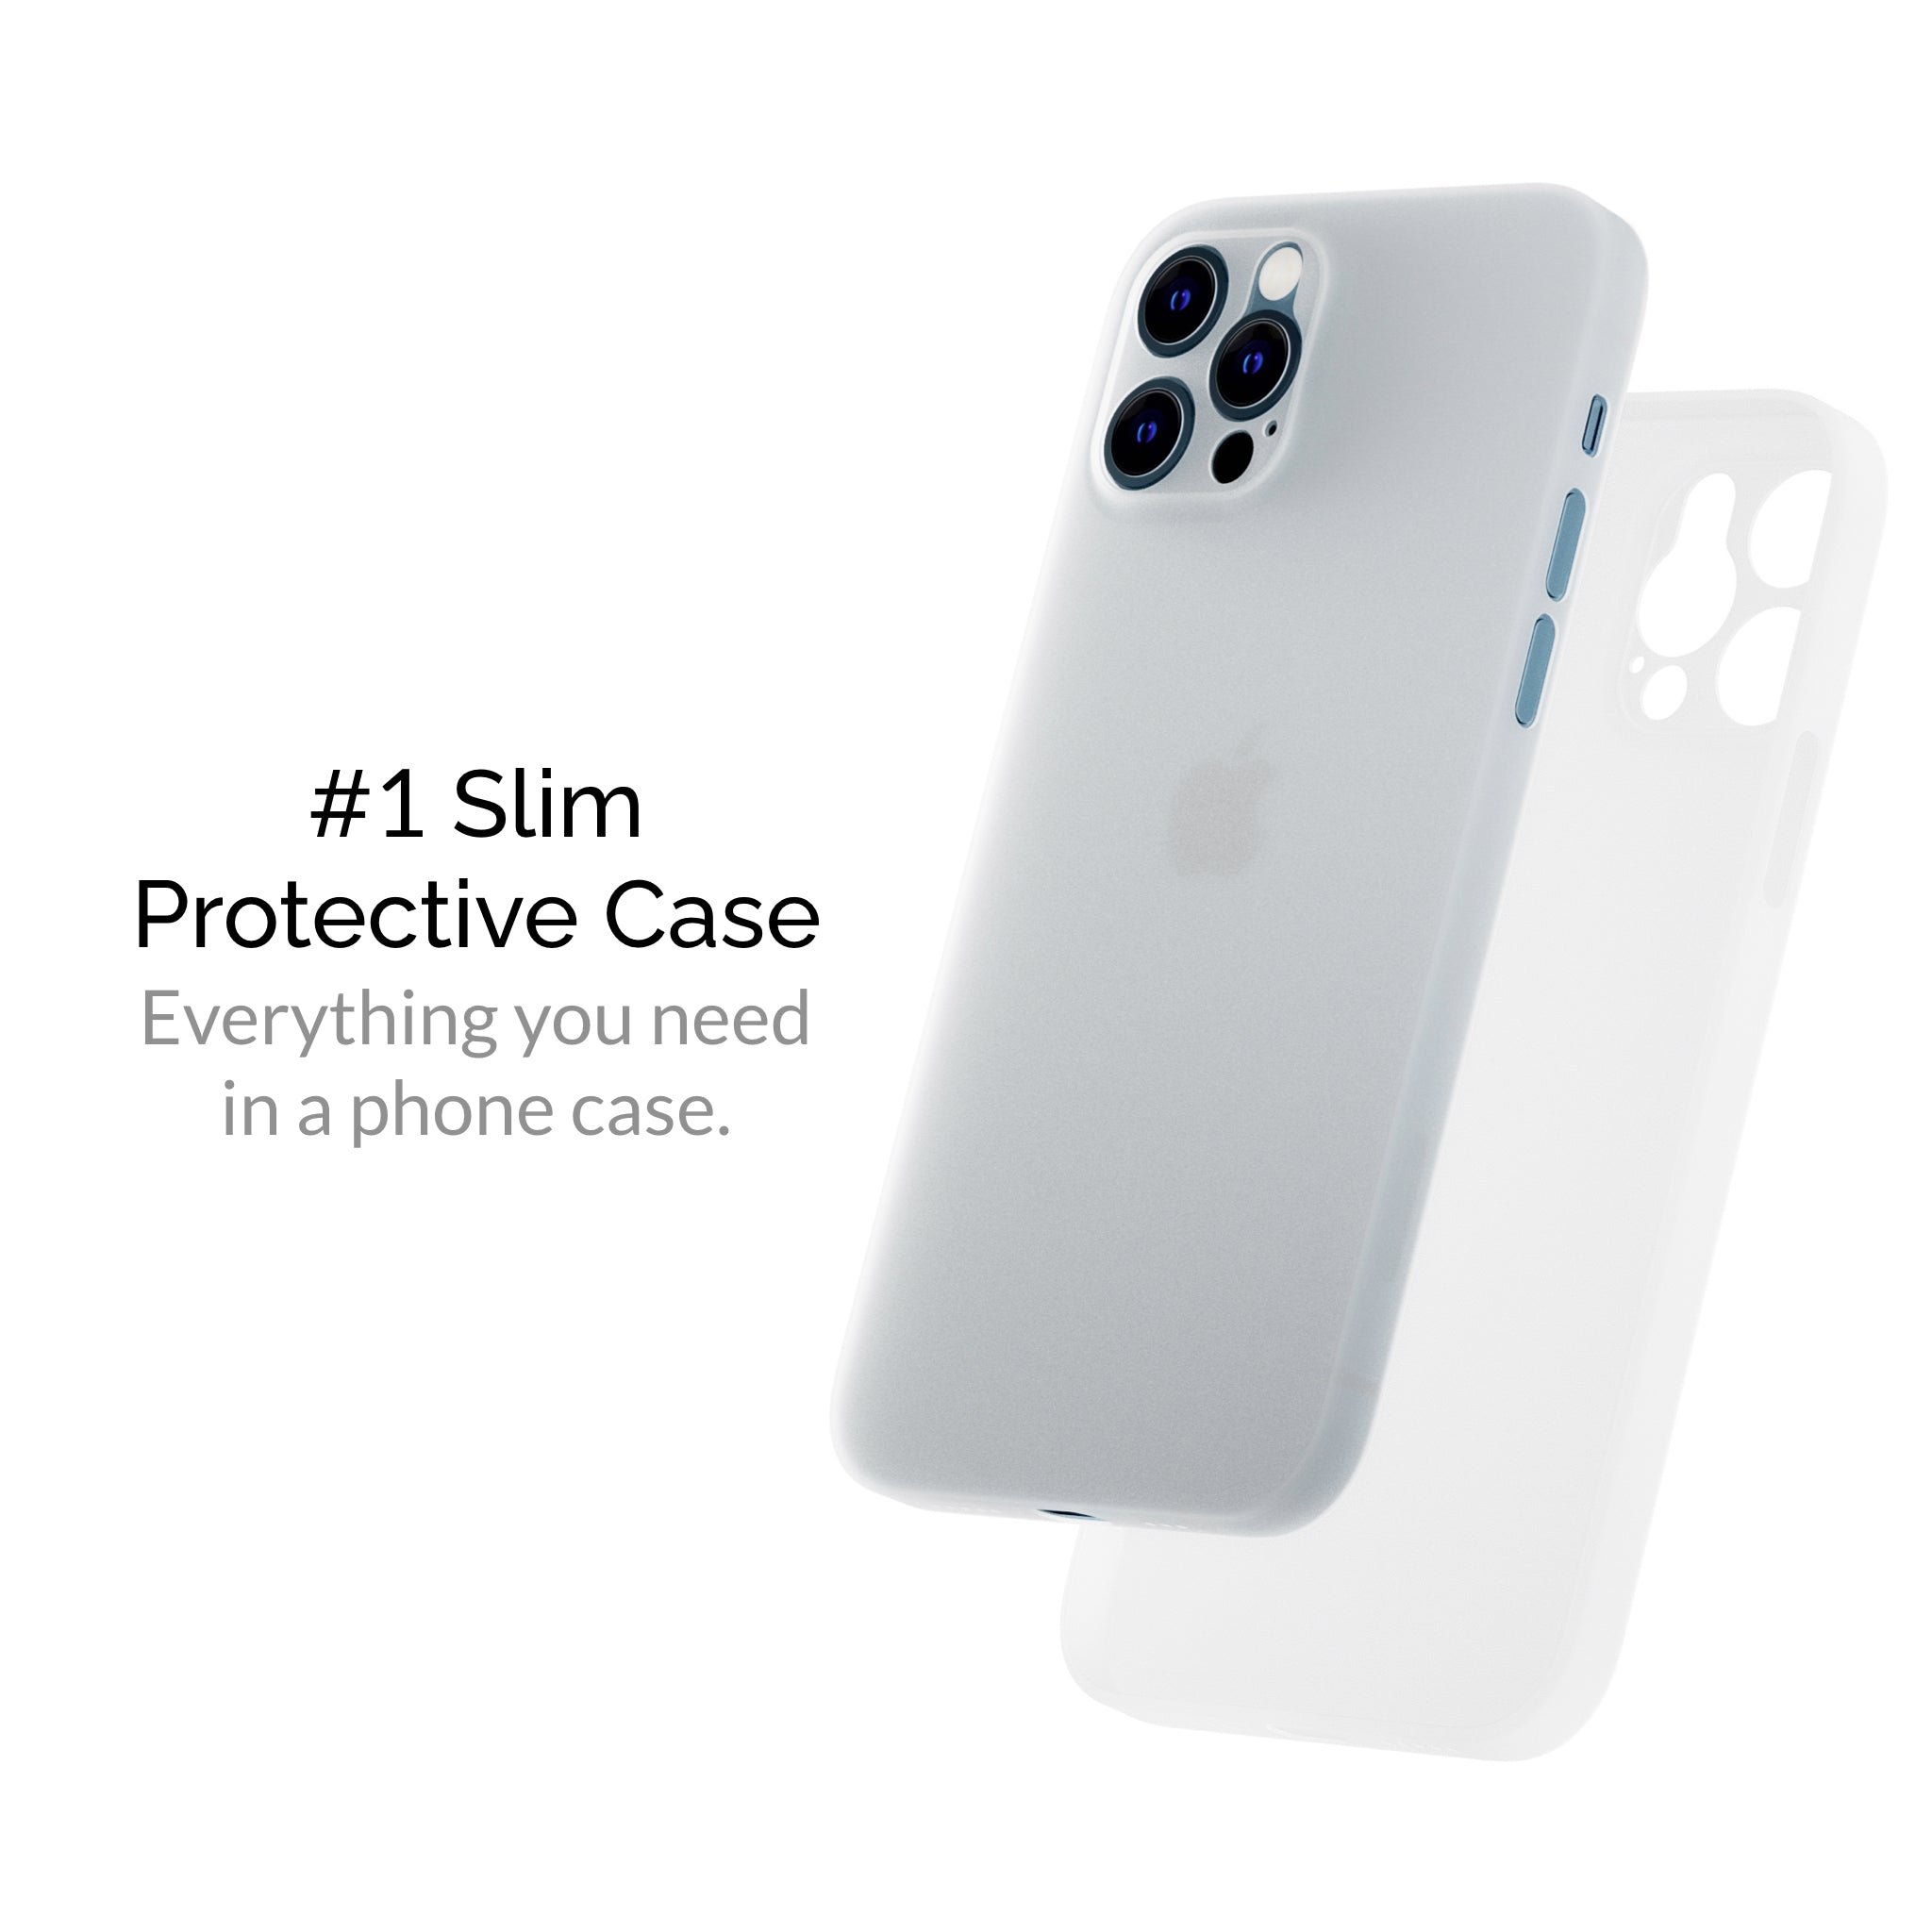 iphone 12 pro max cases, iphone 12 pro max case, slimcase iphone 12 pro max, iphone 12 pro max slimcase